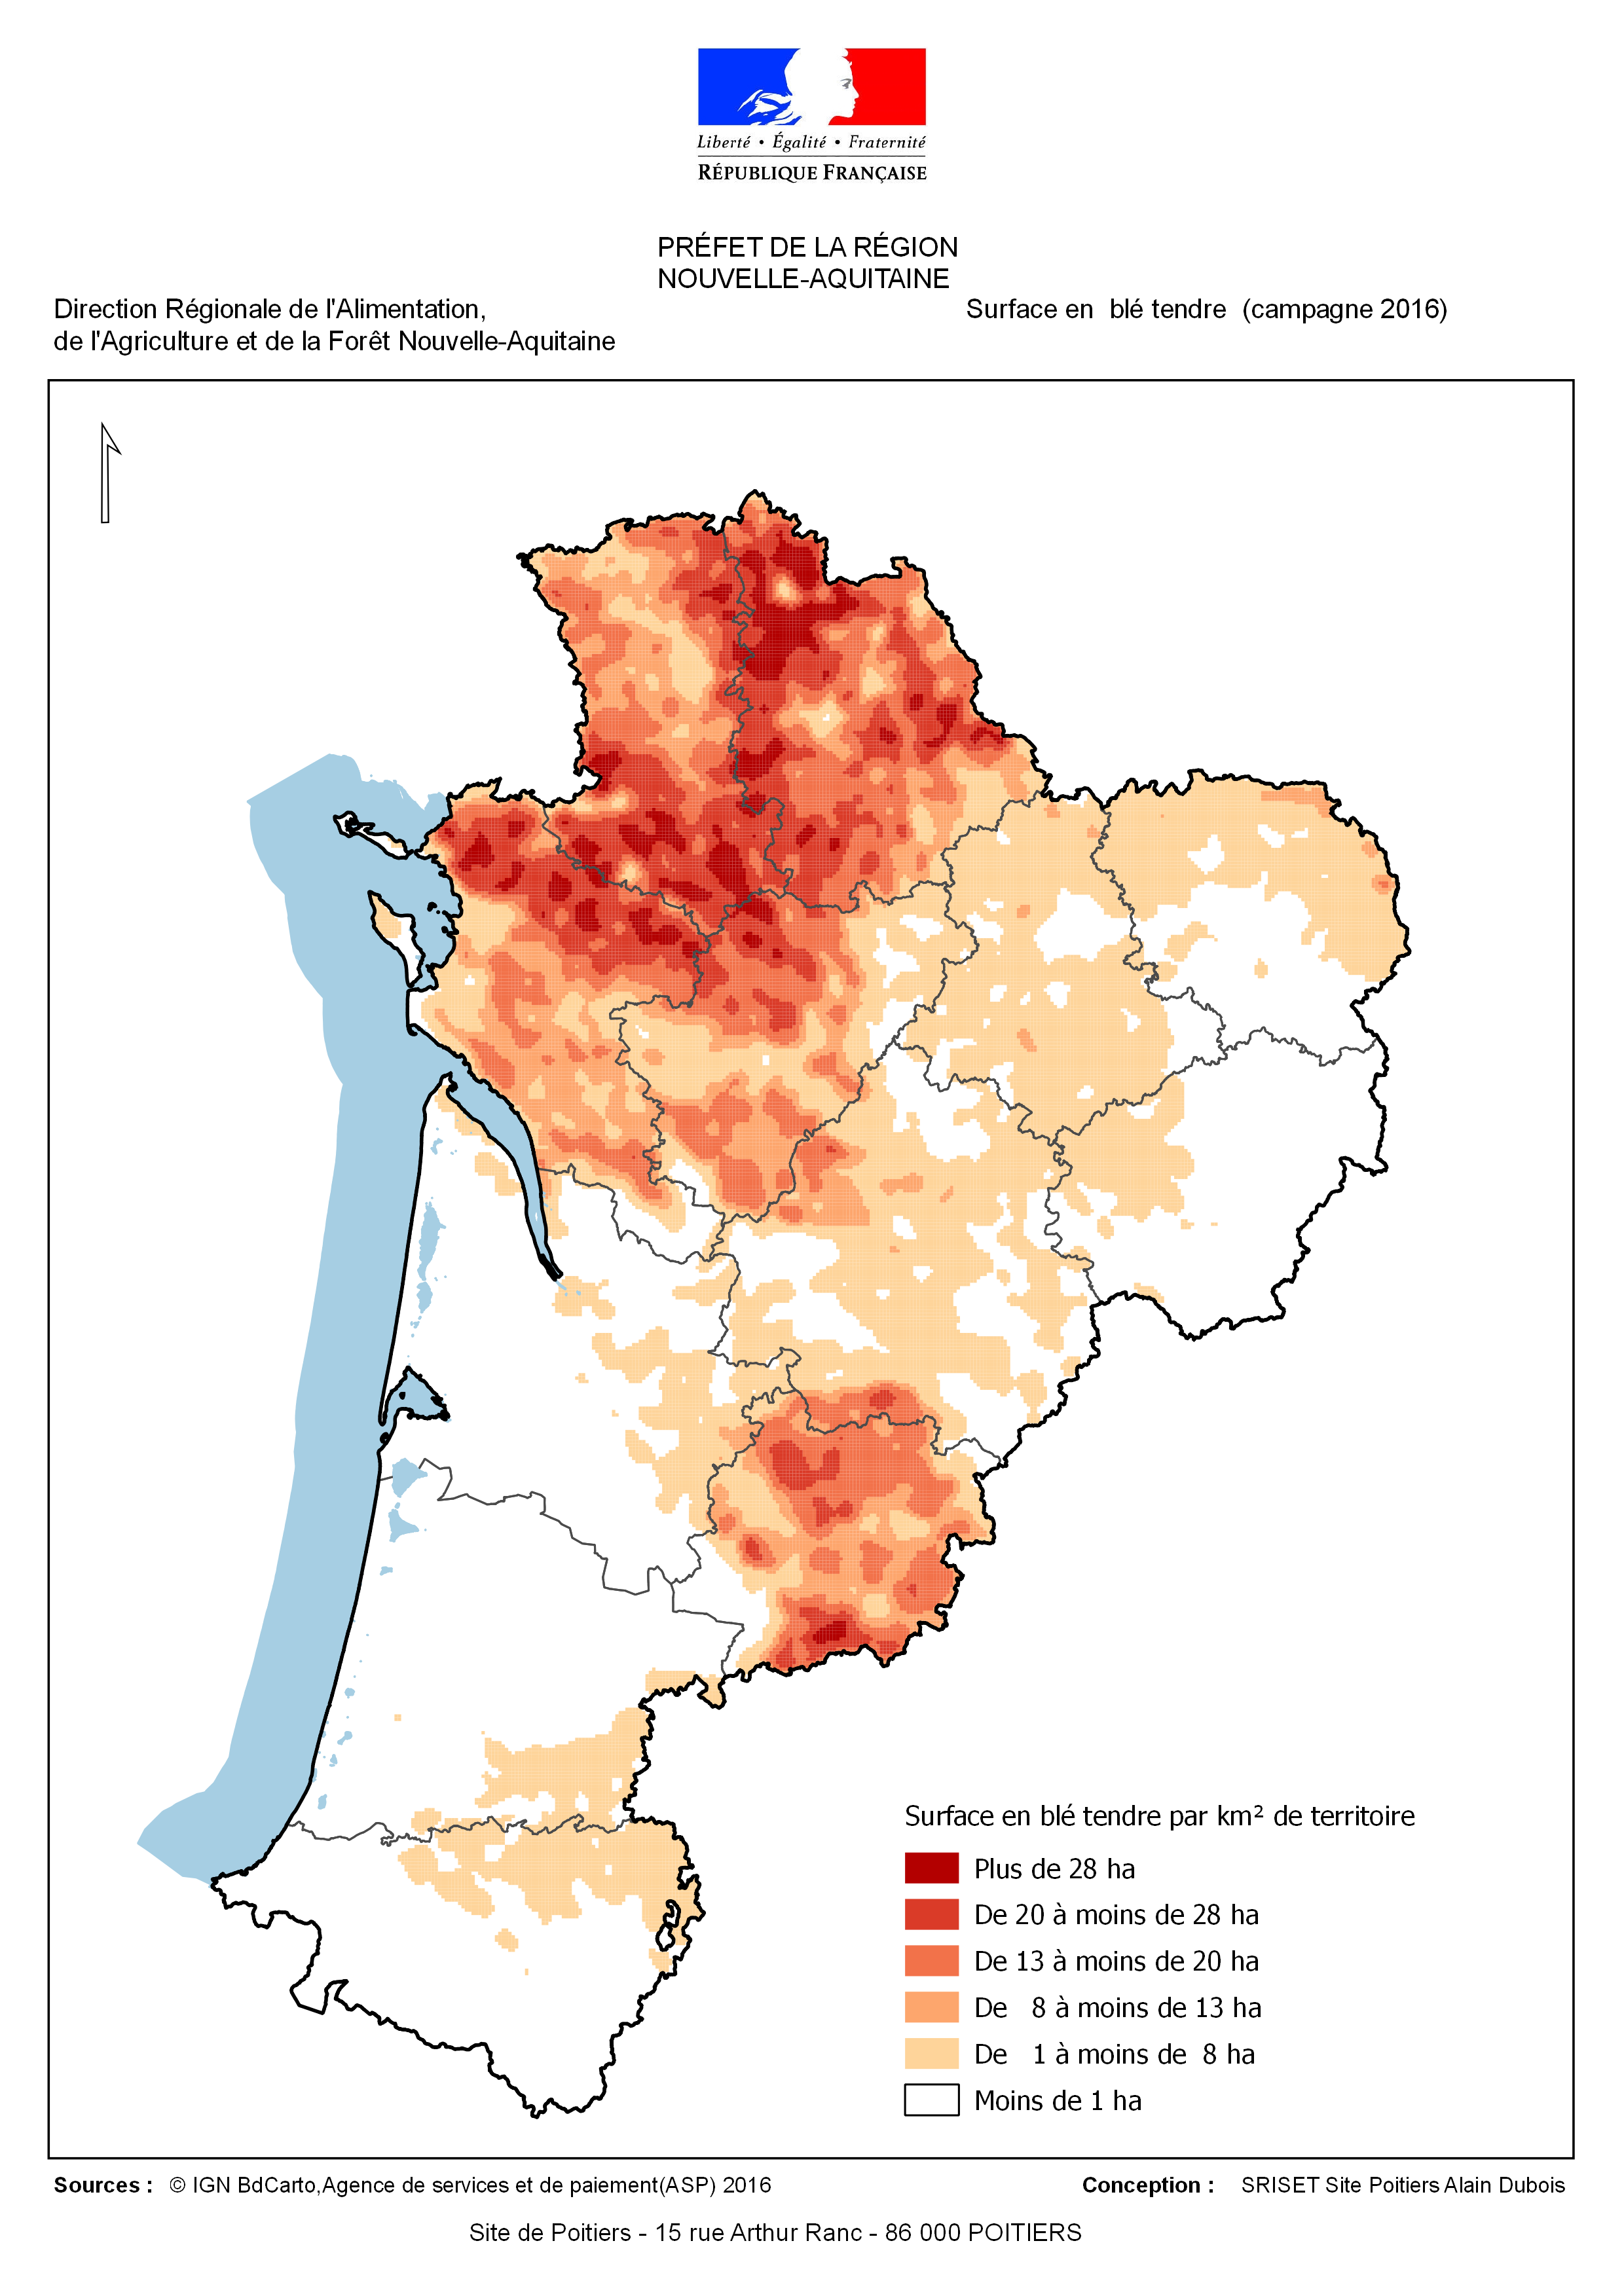 Nouvelle Aquitaine : Les surfaces semées en blé tendre durant la campagne 2016